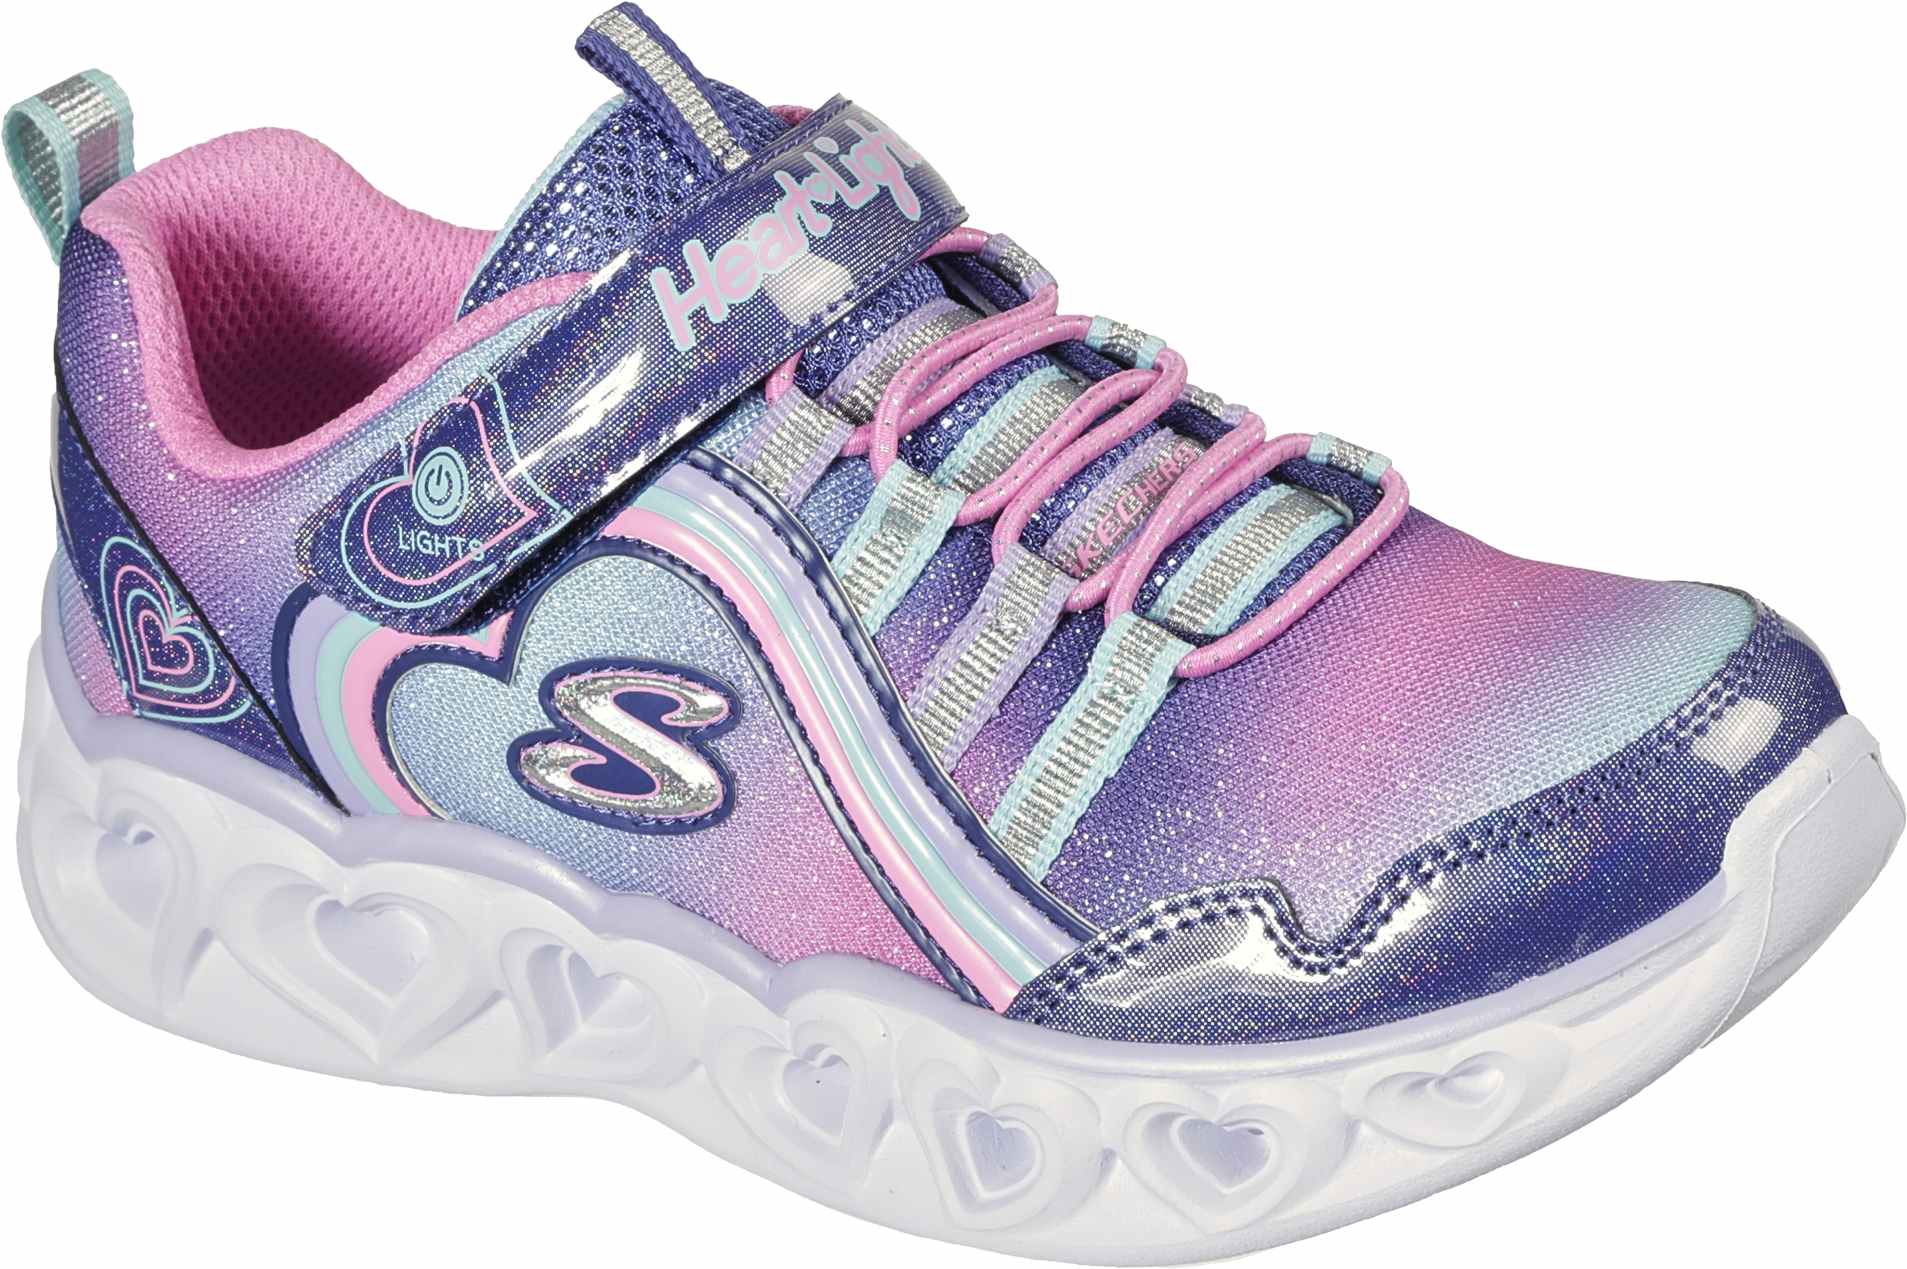 Blinkende Sneaker für Mädchen